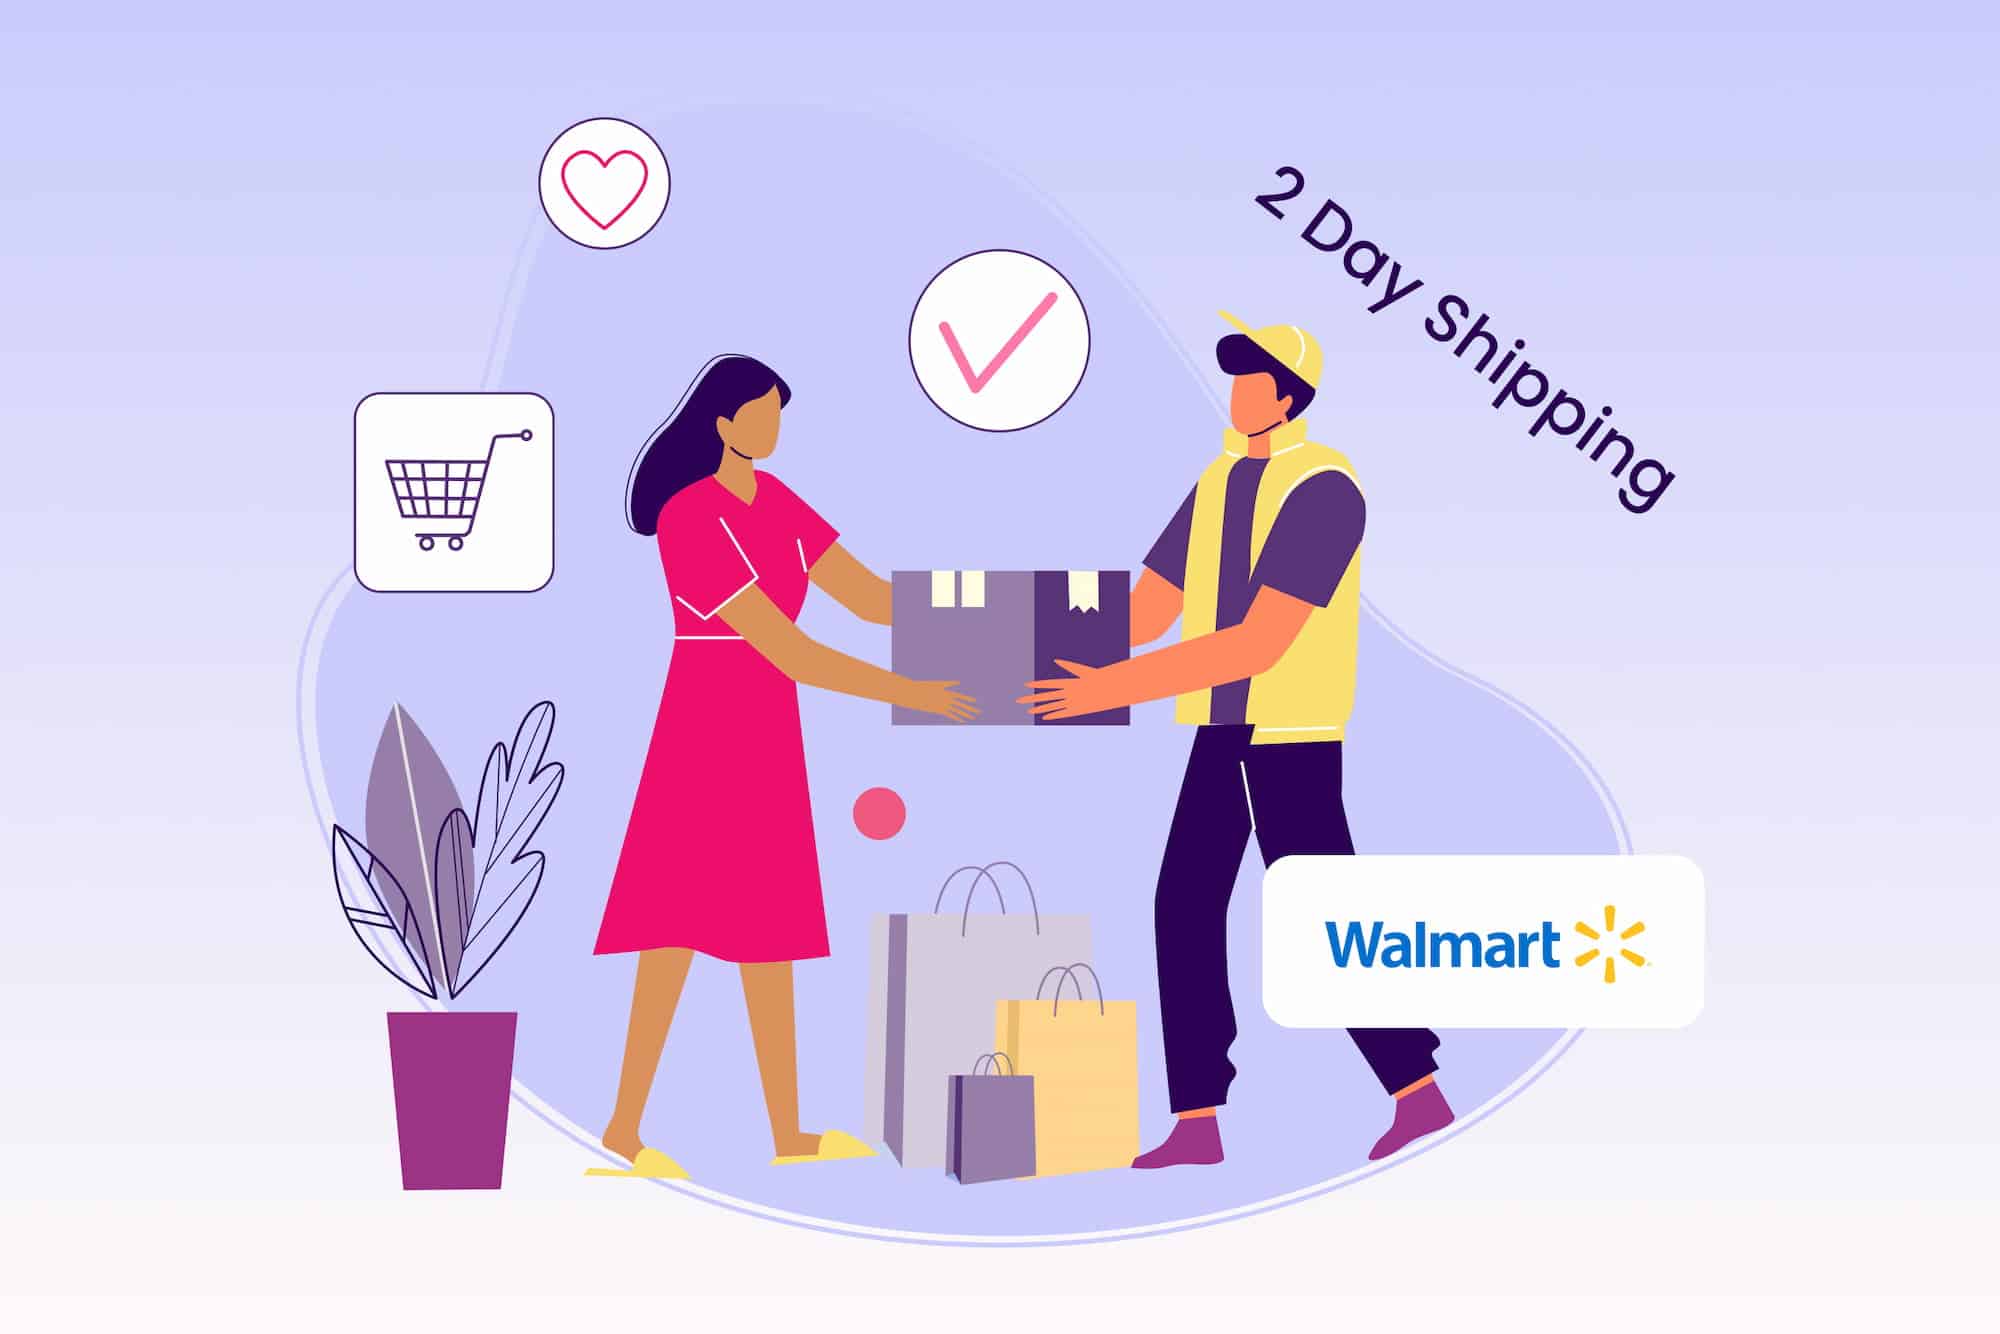 Walmart 2-Day Shipping